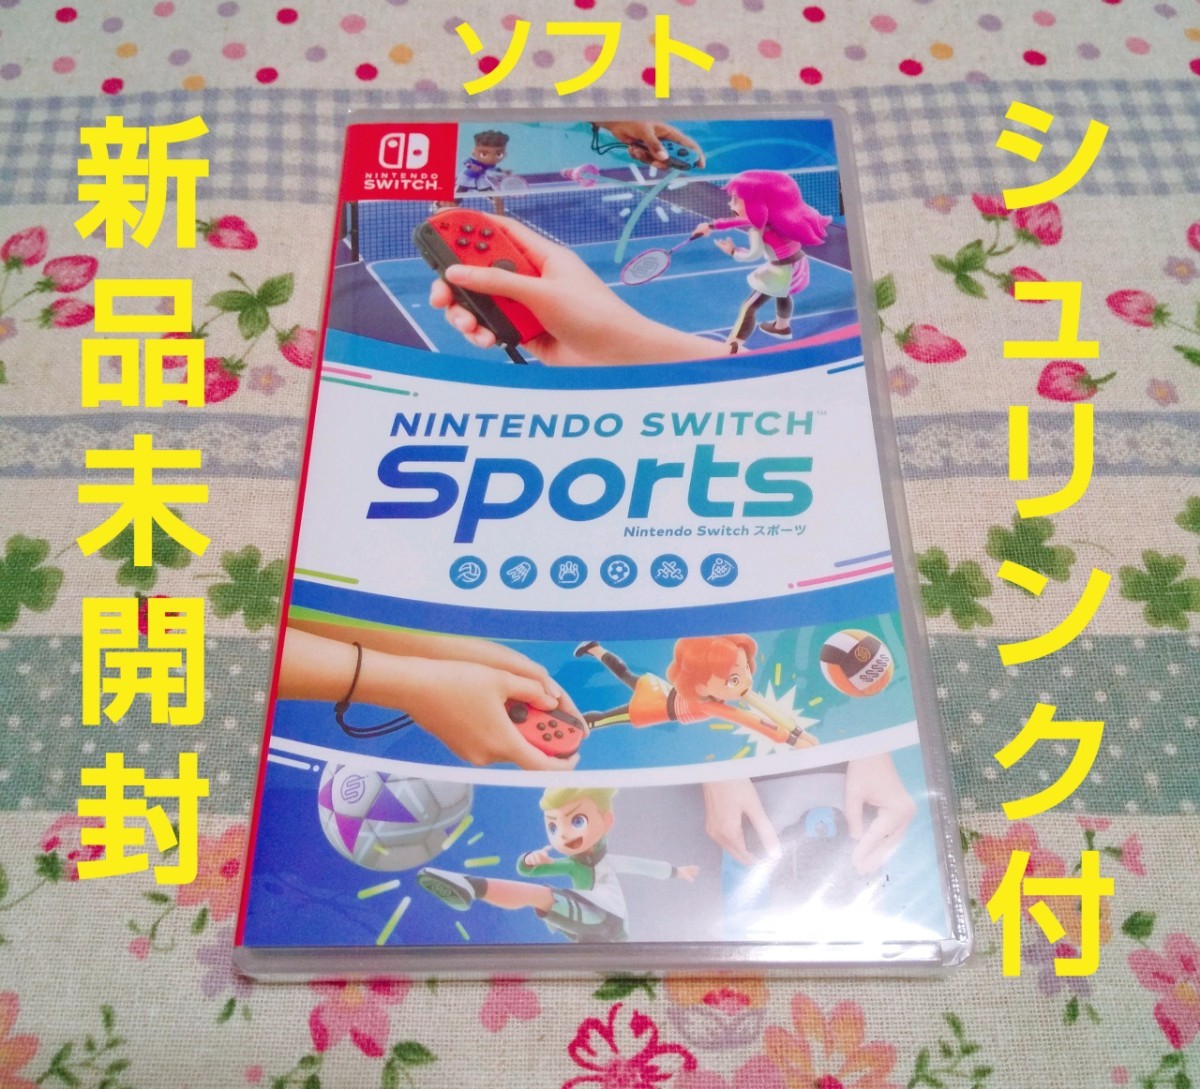  Nintendo Switch Sports【新品】★即購入OK★梱包済★24時間以内発送★